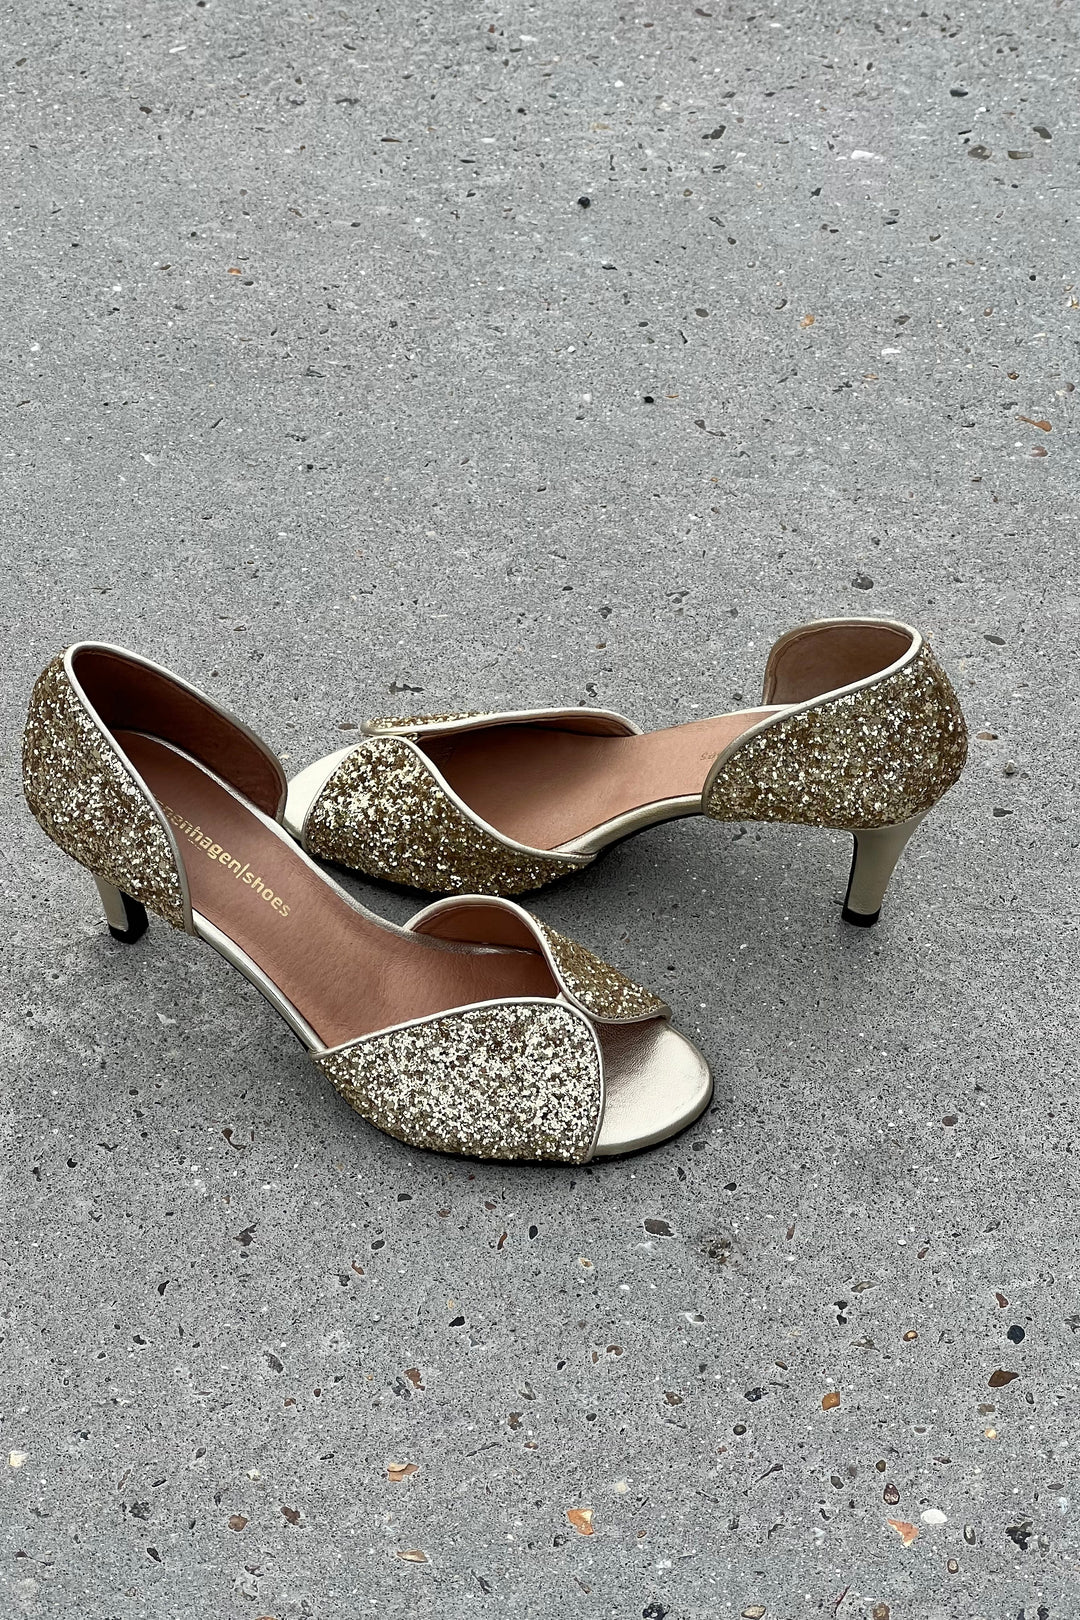 Copenhagen Shoes - My Diamonds - 013 Gold Glitter Stiletter 